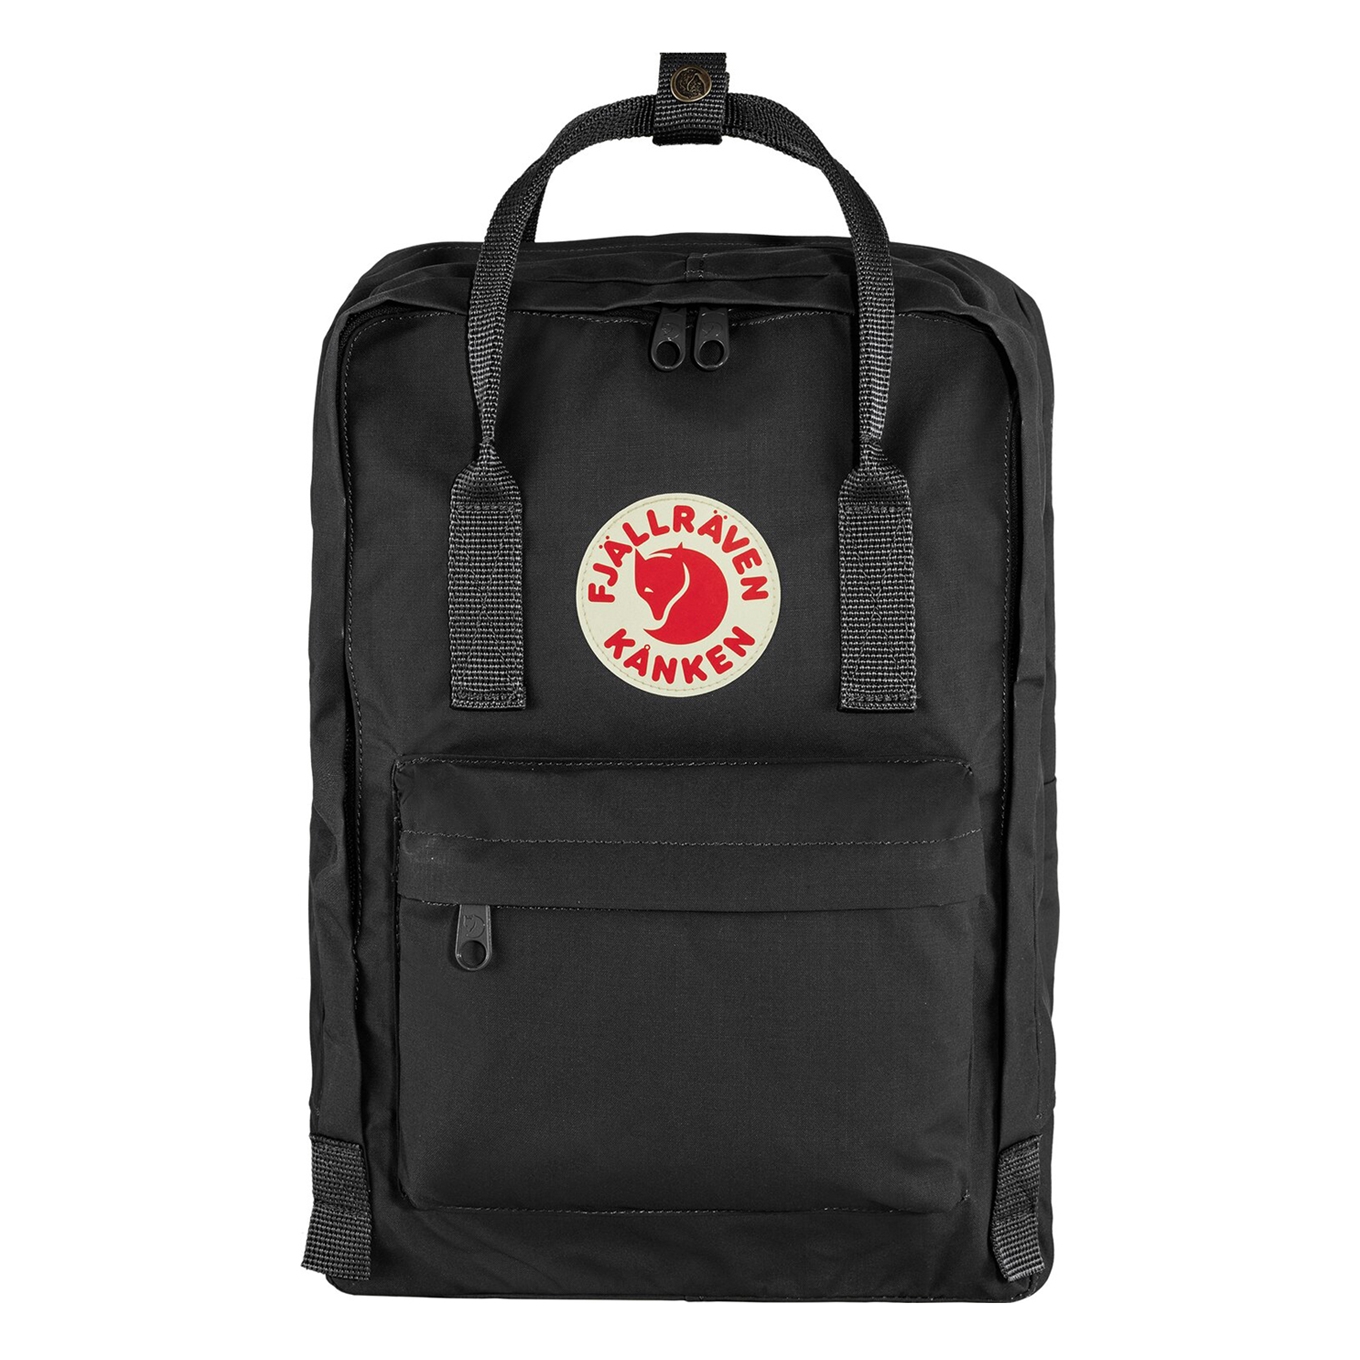 Fjallraven Kanken Laptop 13" black backpack